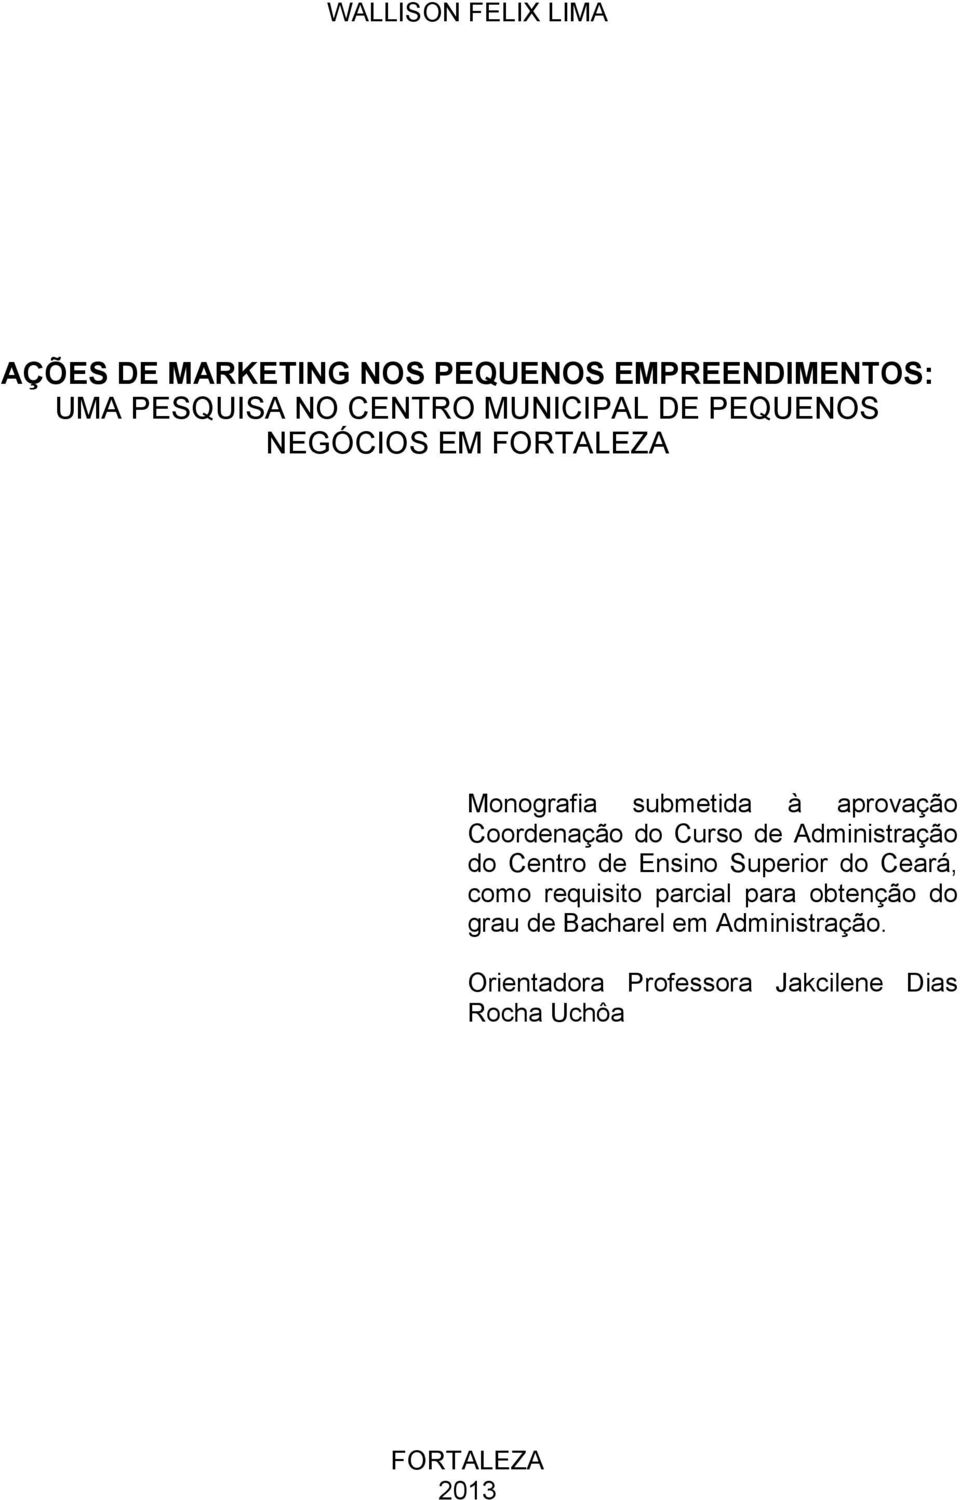 Curso de Administração do Centro de Ensino Superior do Ceará, como requisito parcial para